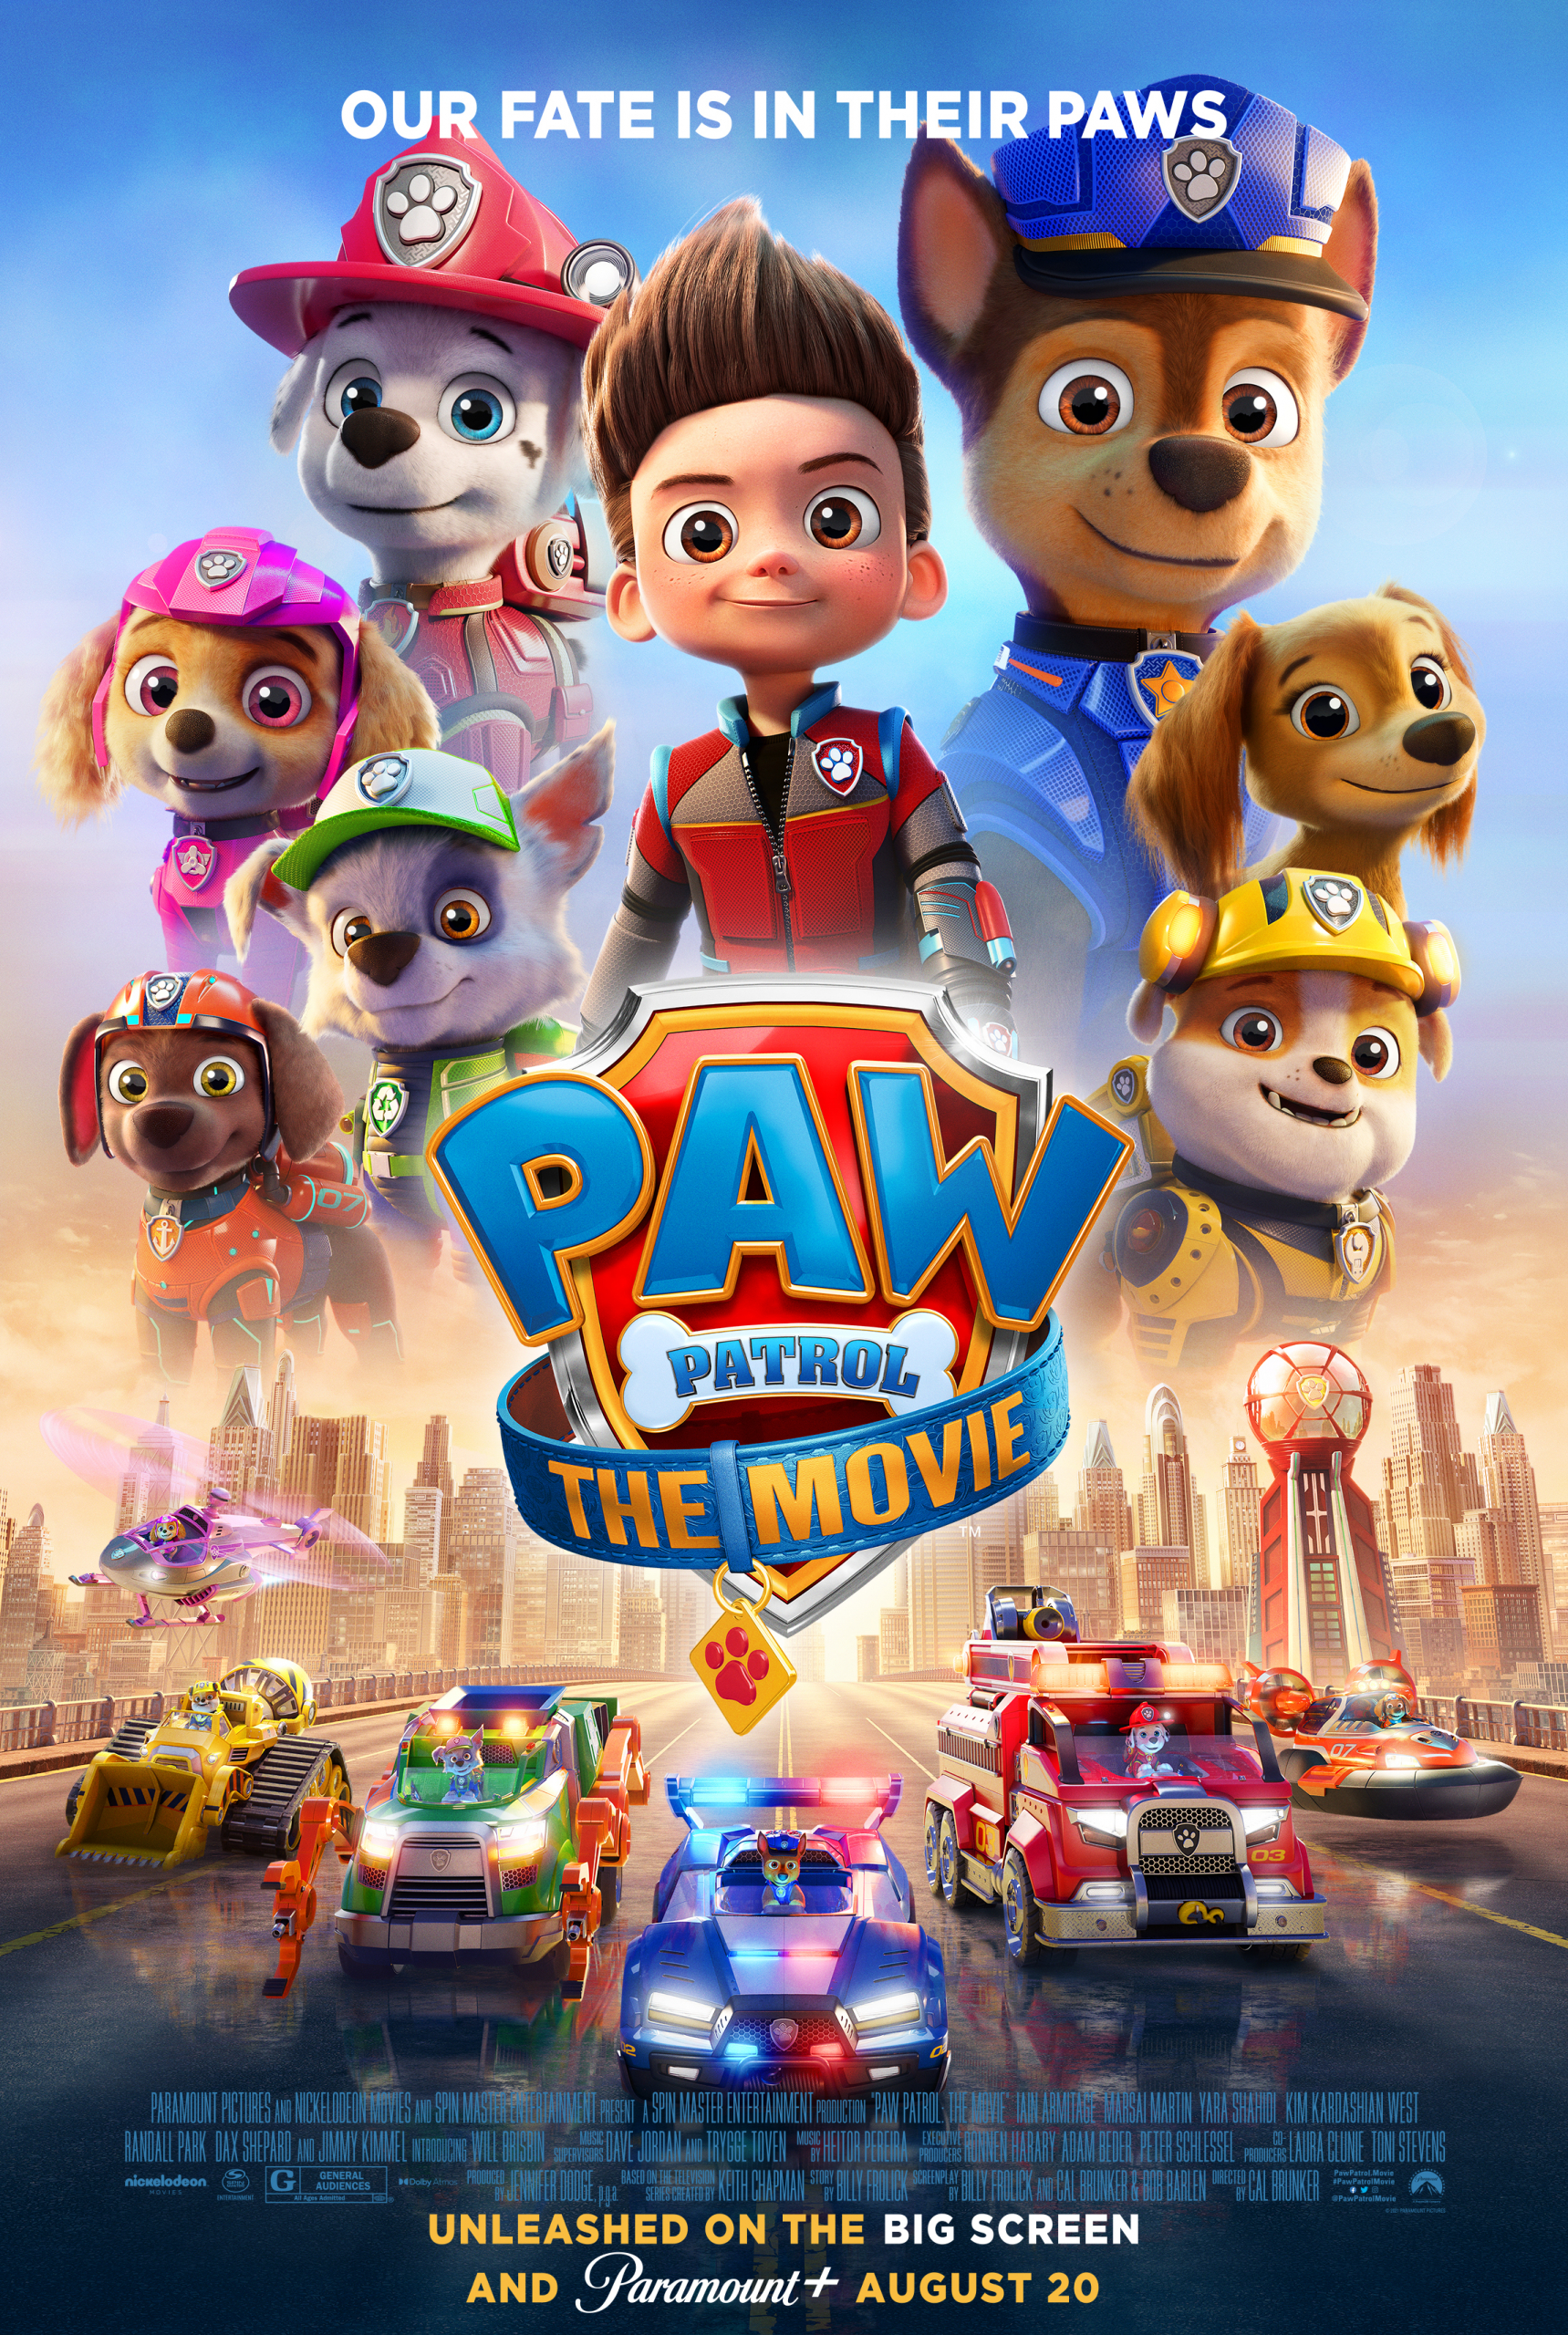 PAW Patrol The Movie ขบวนการเจ้าตูบสี่ขา เดอะ มูฟวี่ (2021)